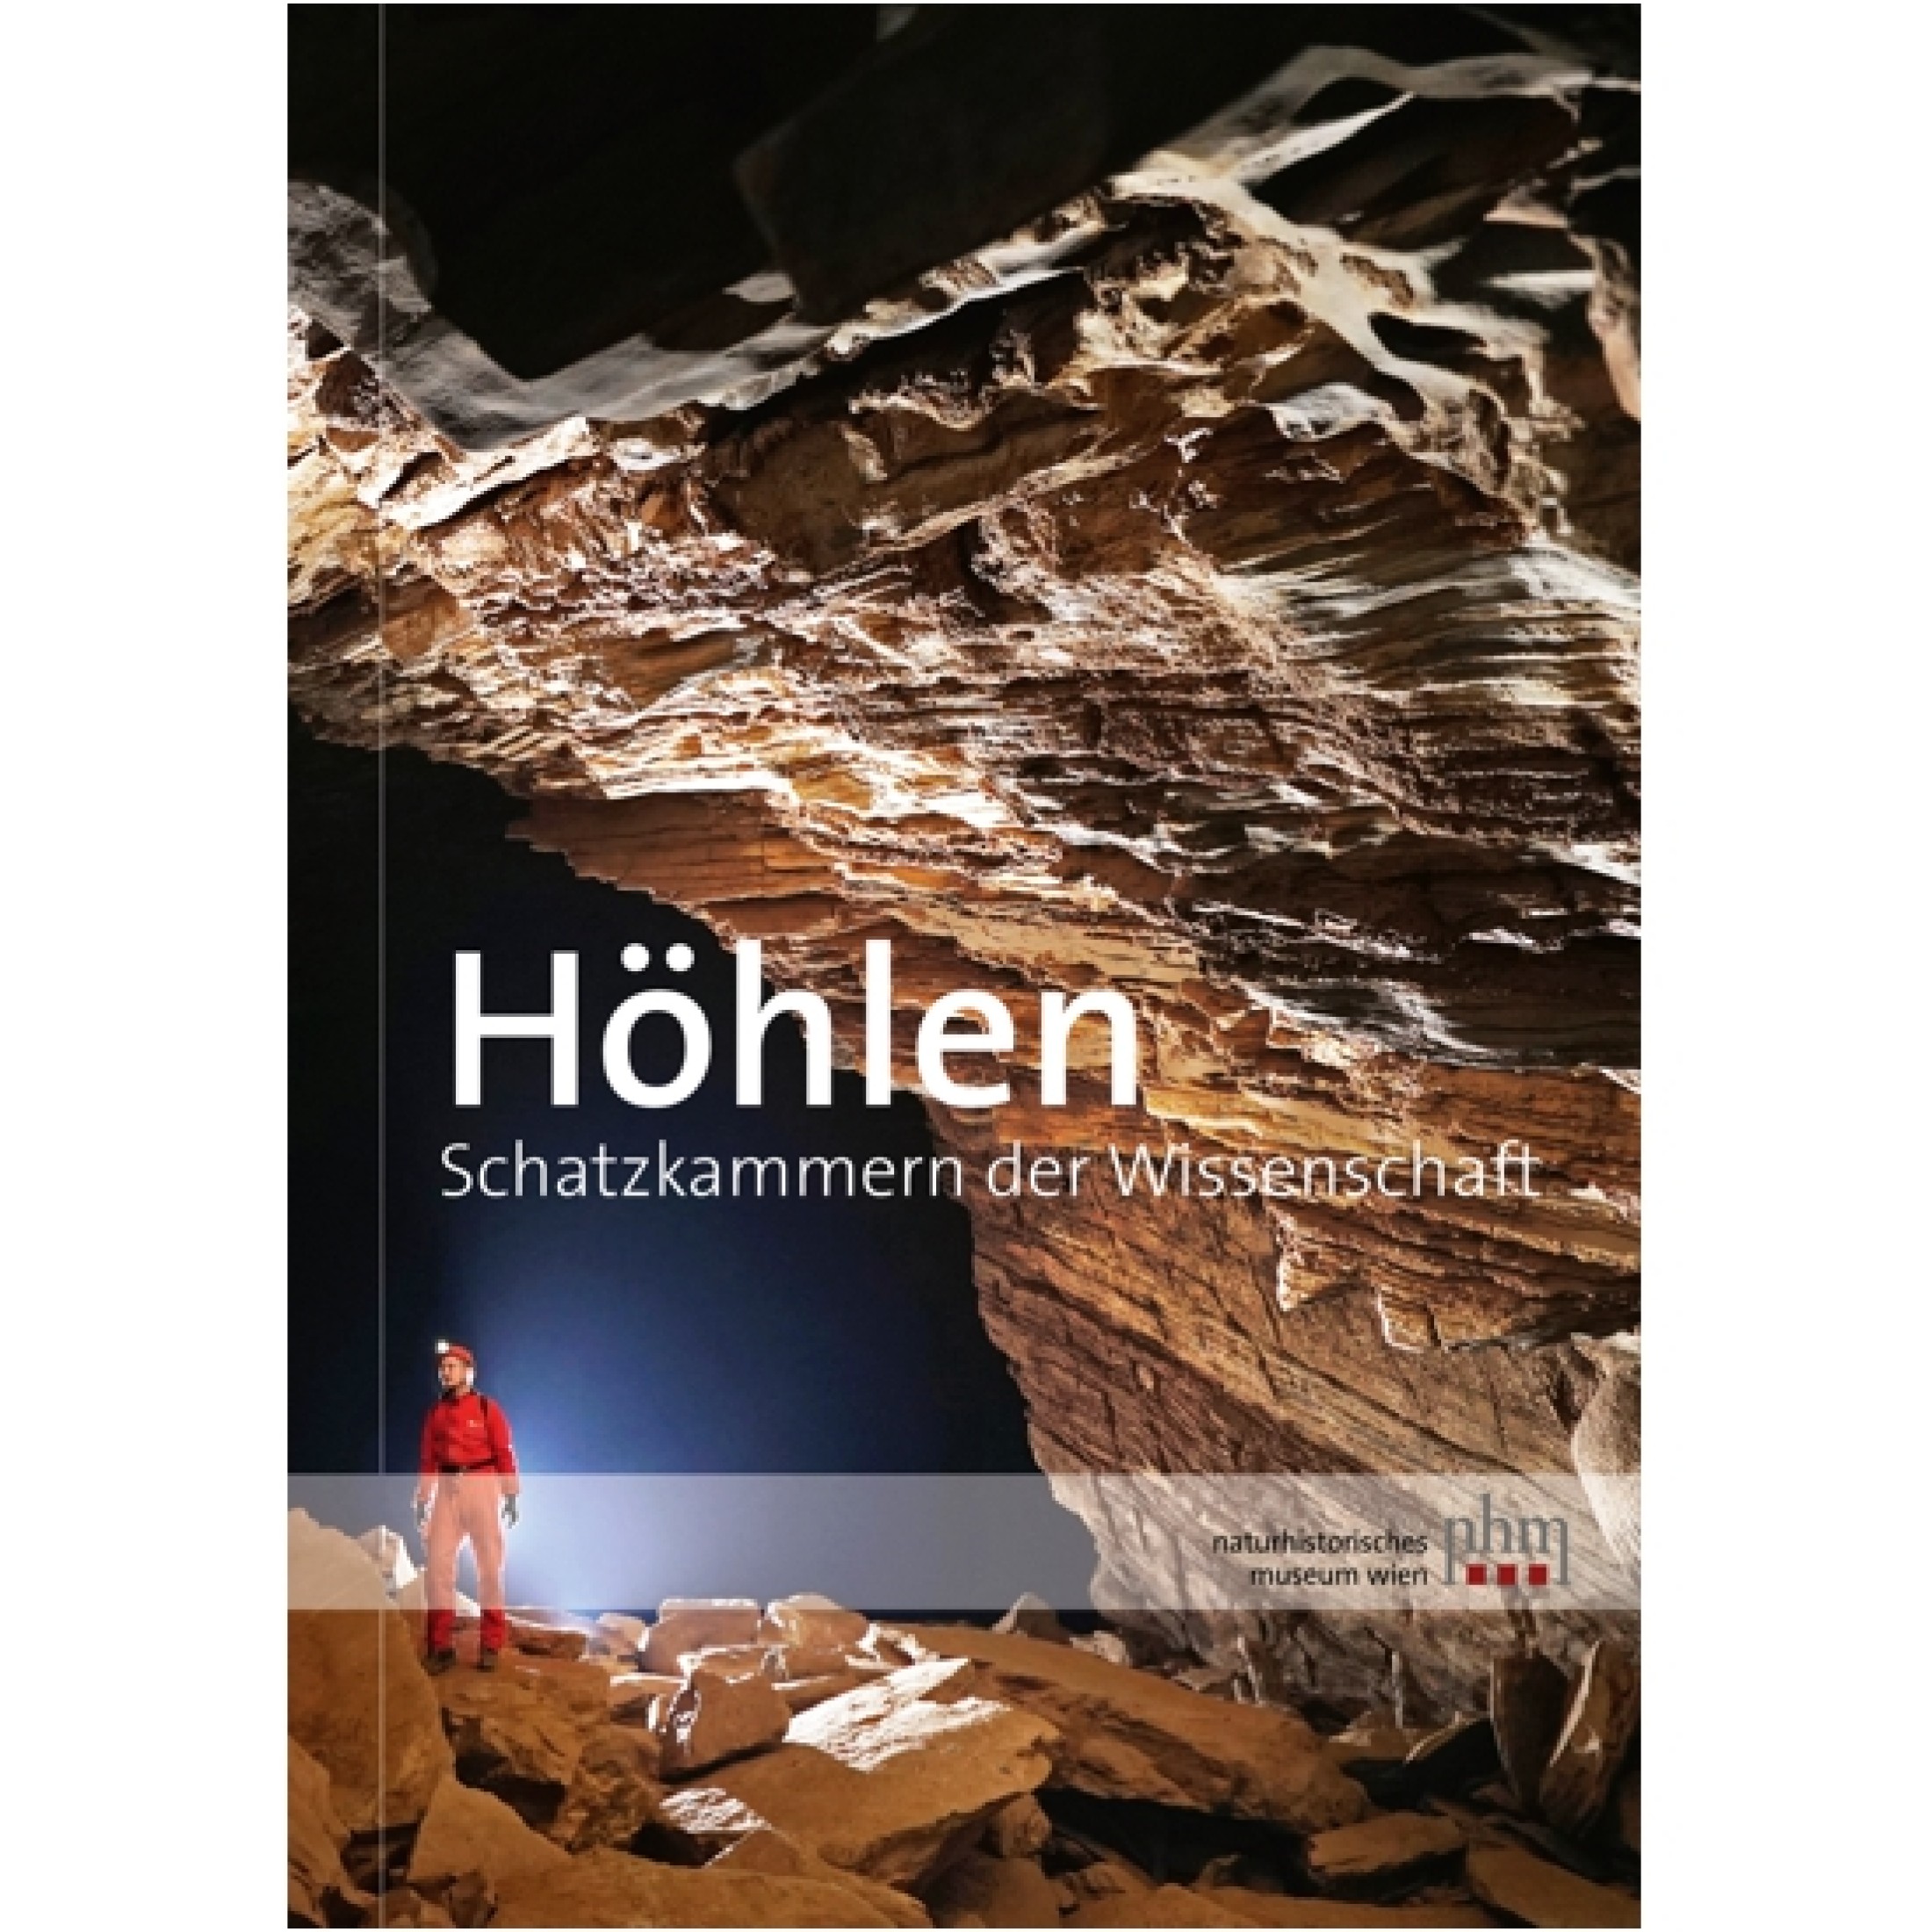 Plan, Lukas – Pauline Oberender – Andreas Kroh : Höhlen. Schatzkammern der Wissenschaft